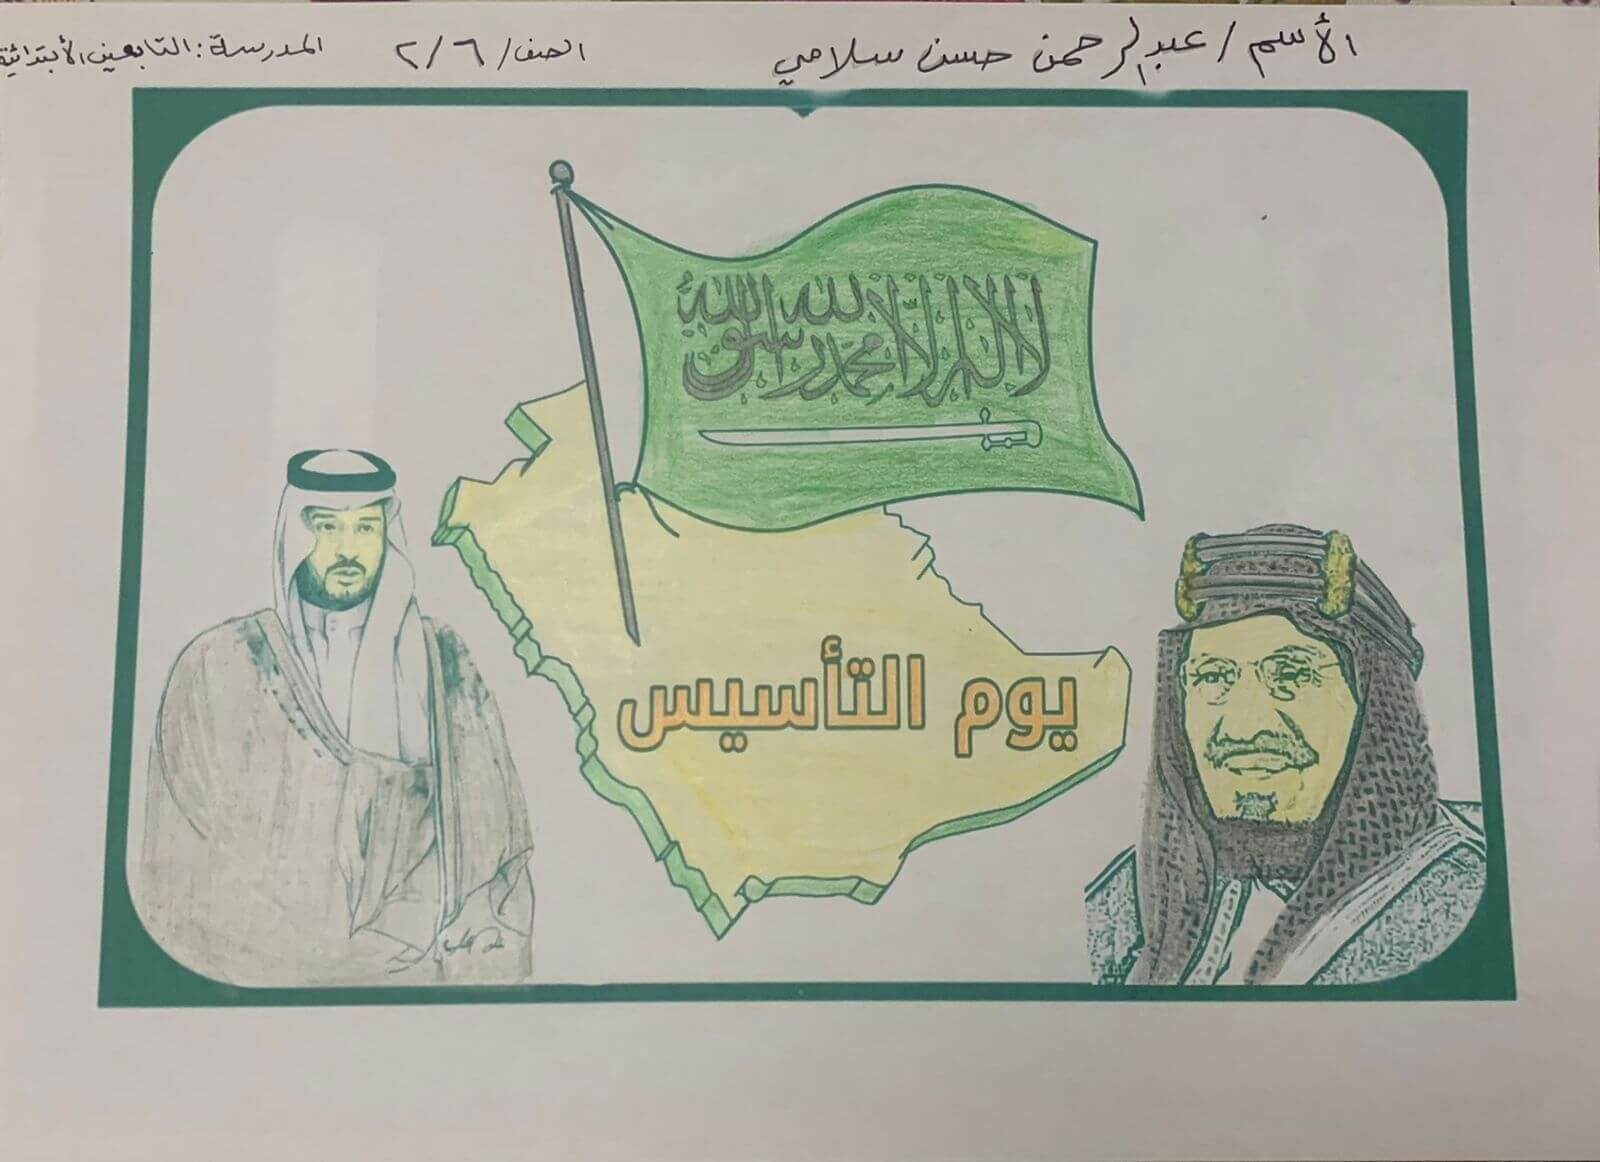 صورة جميلة ليوم التأسيس السعودي يظهر علم المملكة مع الملك وابنه وخريطة السعودية